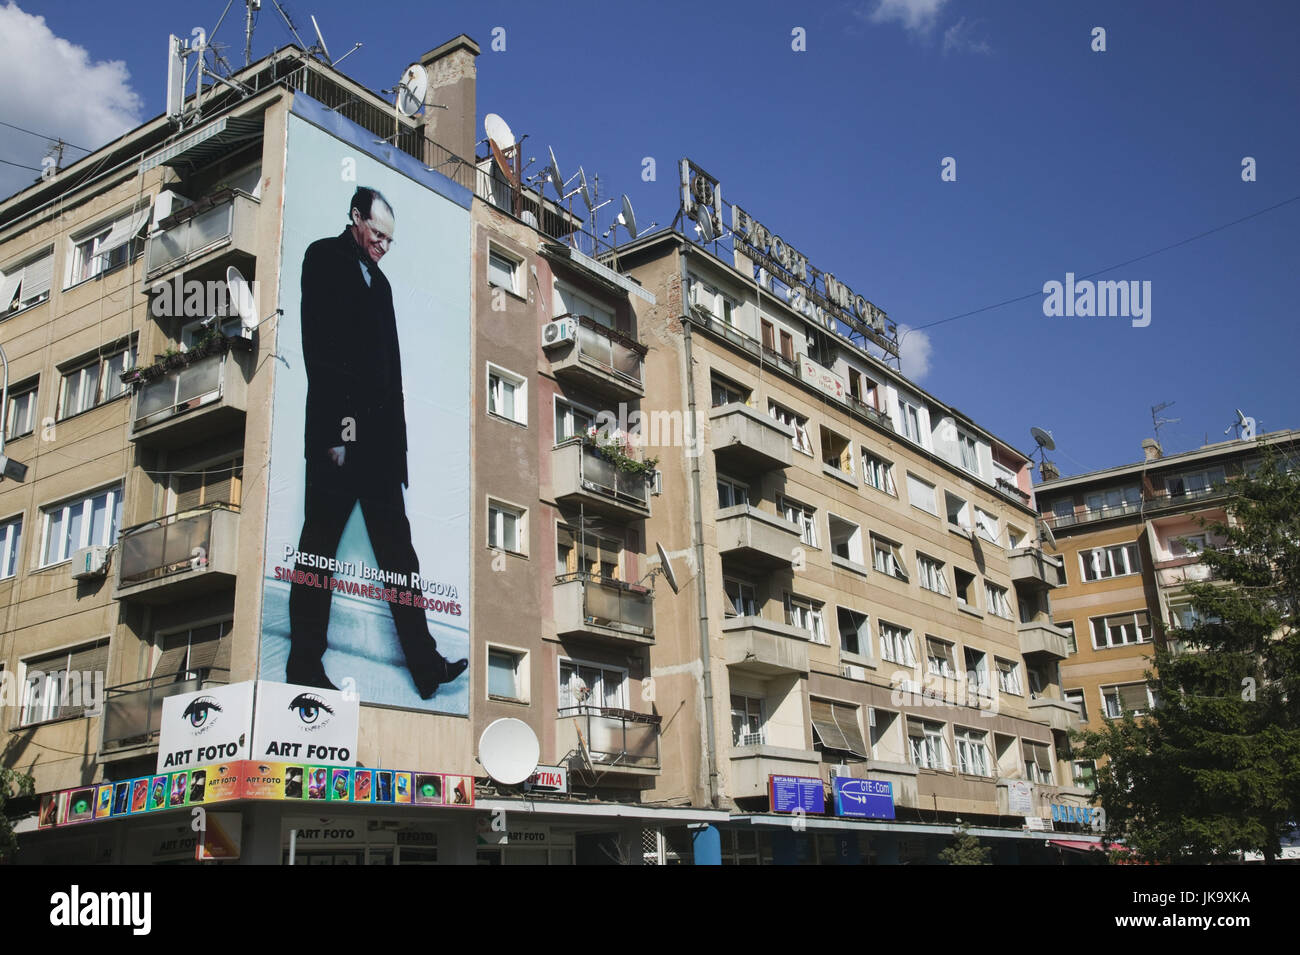 Kosovo, Prishtina, Stadtzentrum, Gebäude, Plakat, Präsident Ibrahim Rugova, 1944-2006, Stock Photo